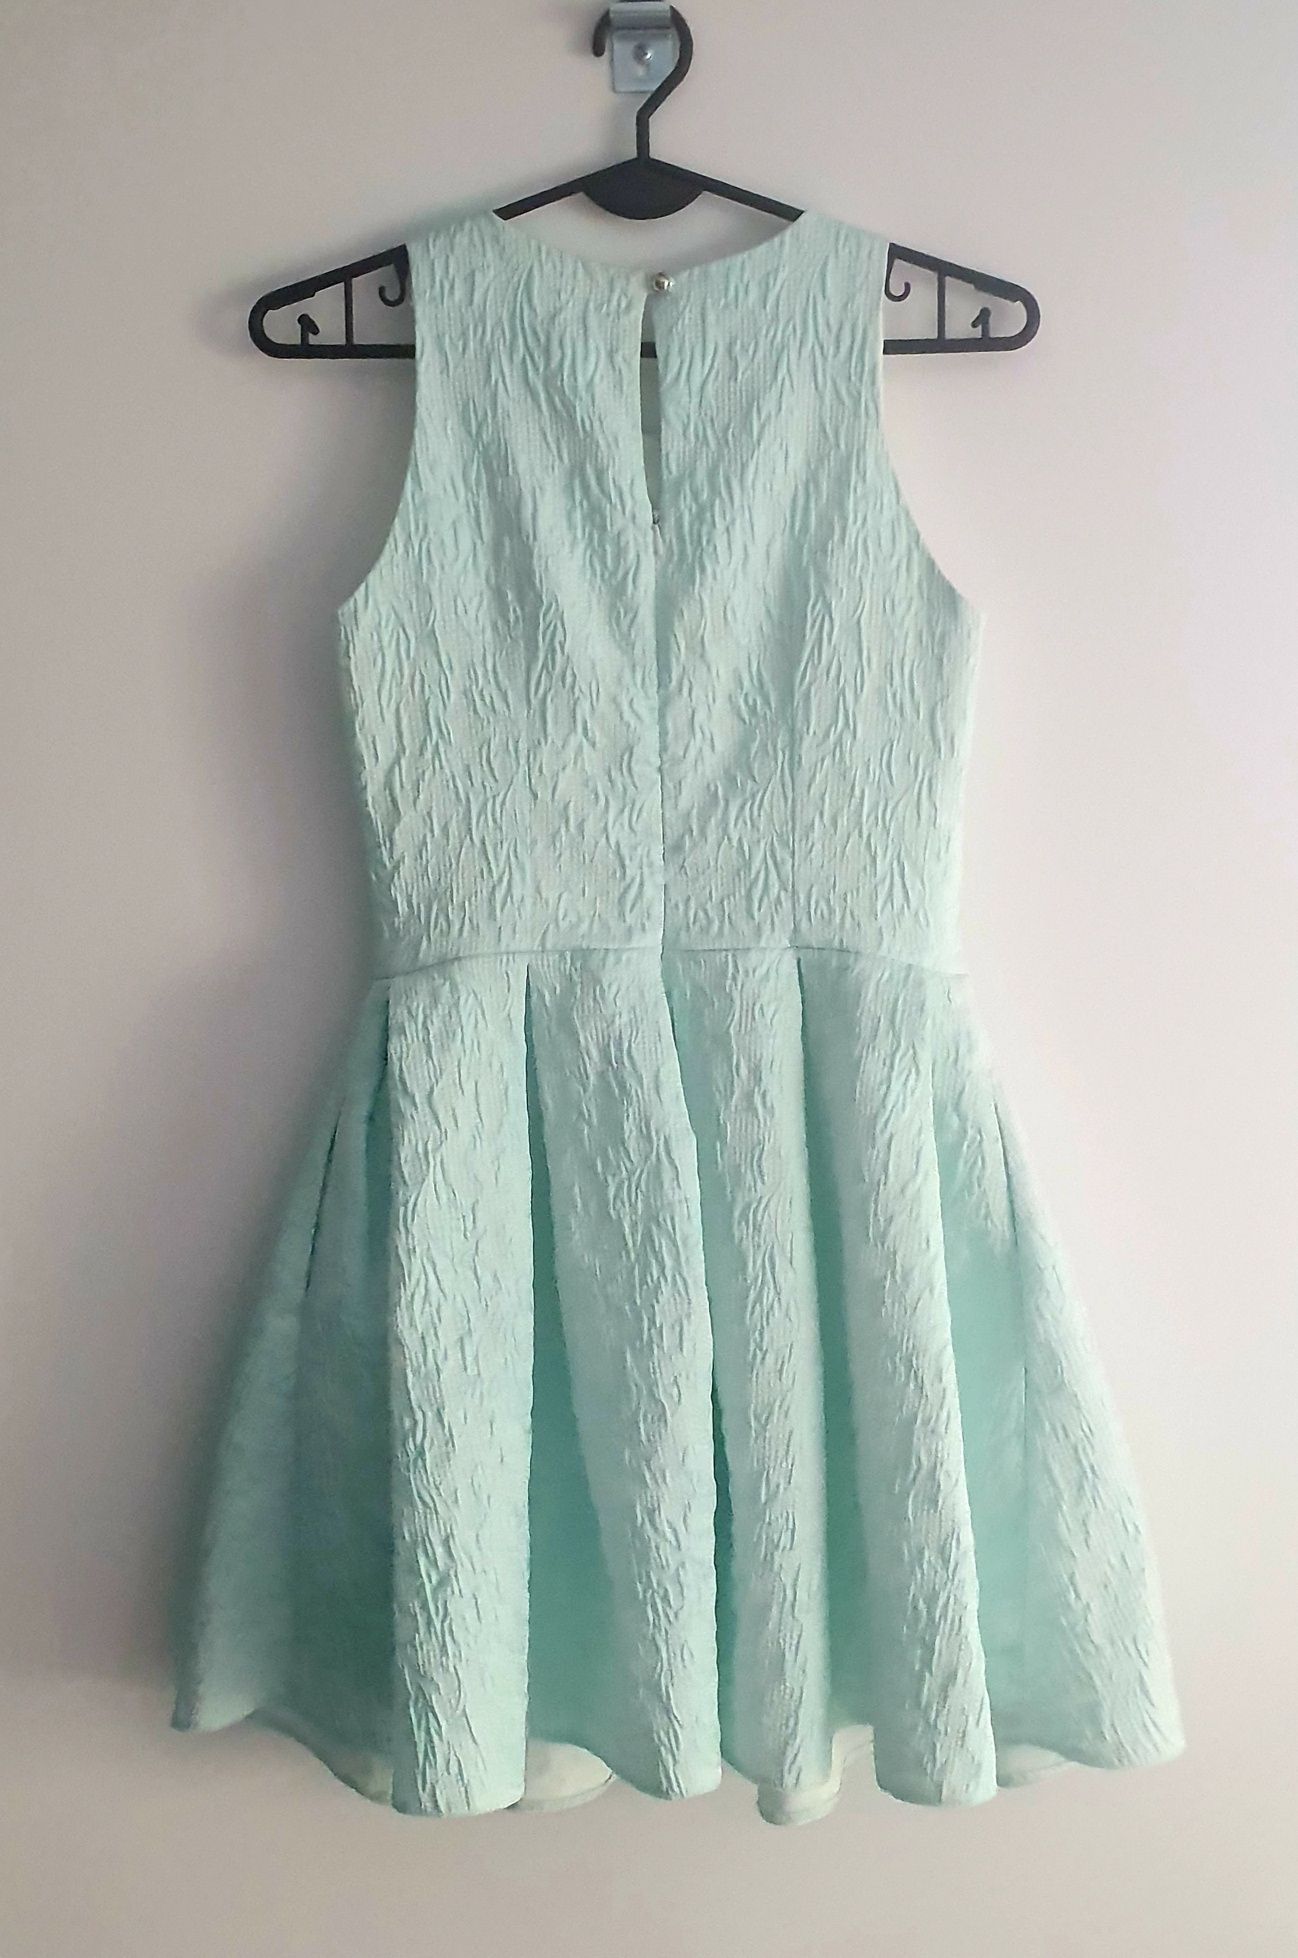 Miętowa sukienka na wesele, chrzciny, komunie, elegancka - rozmiar XS